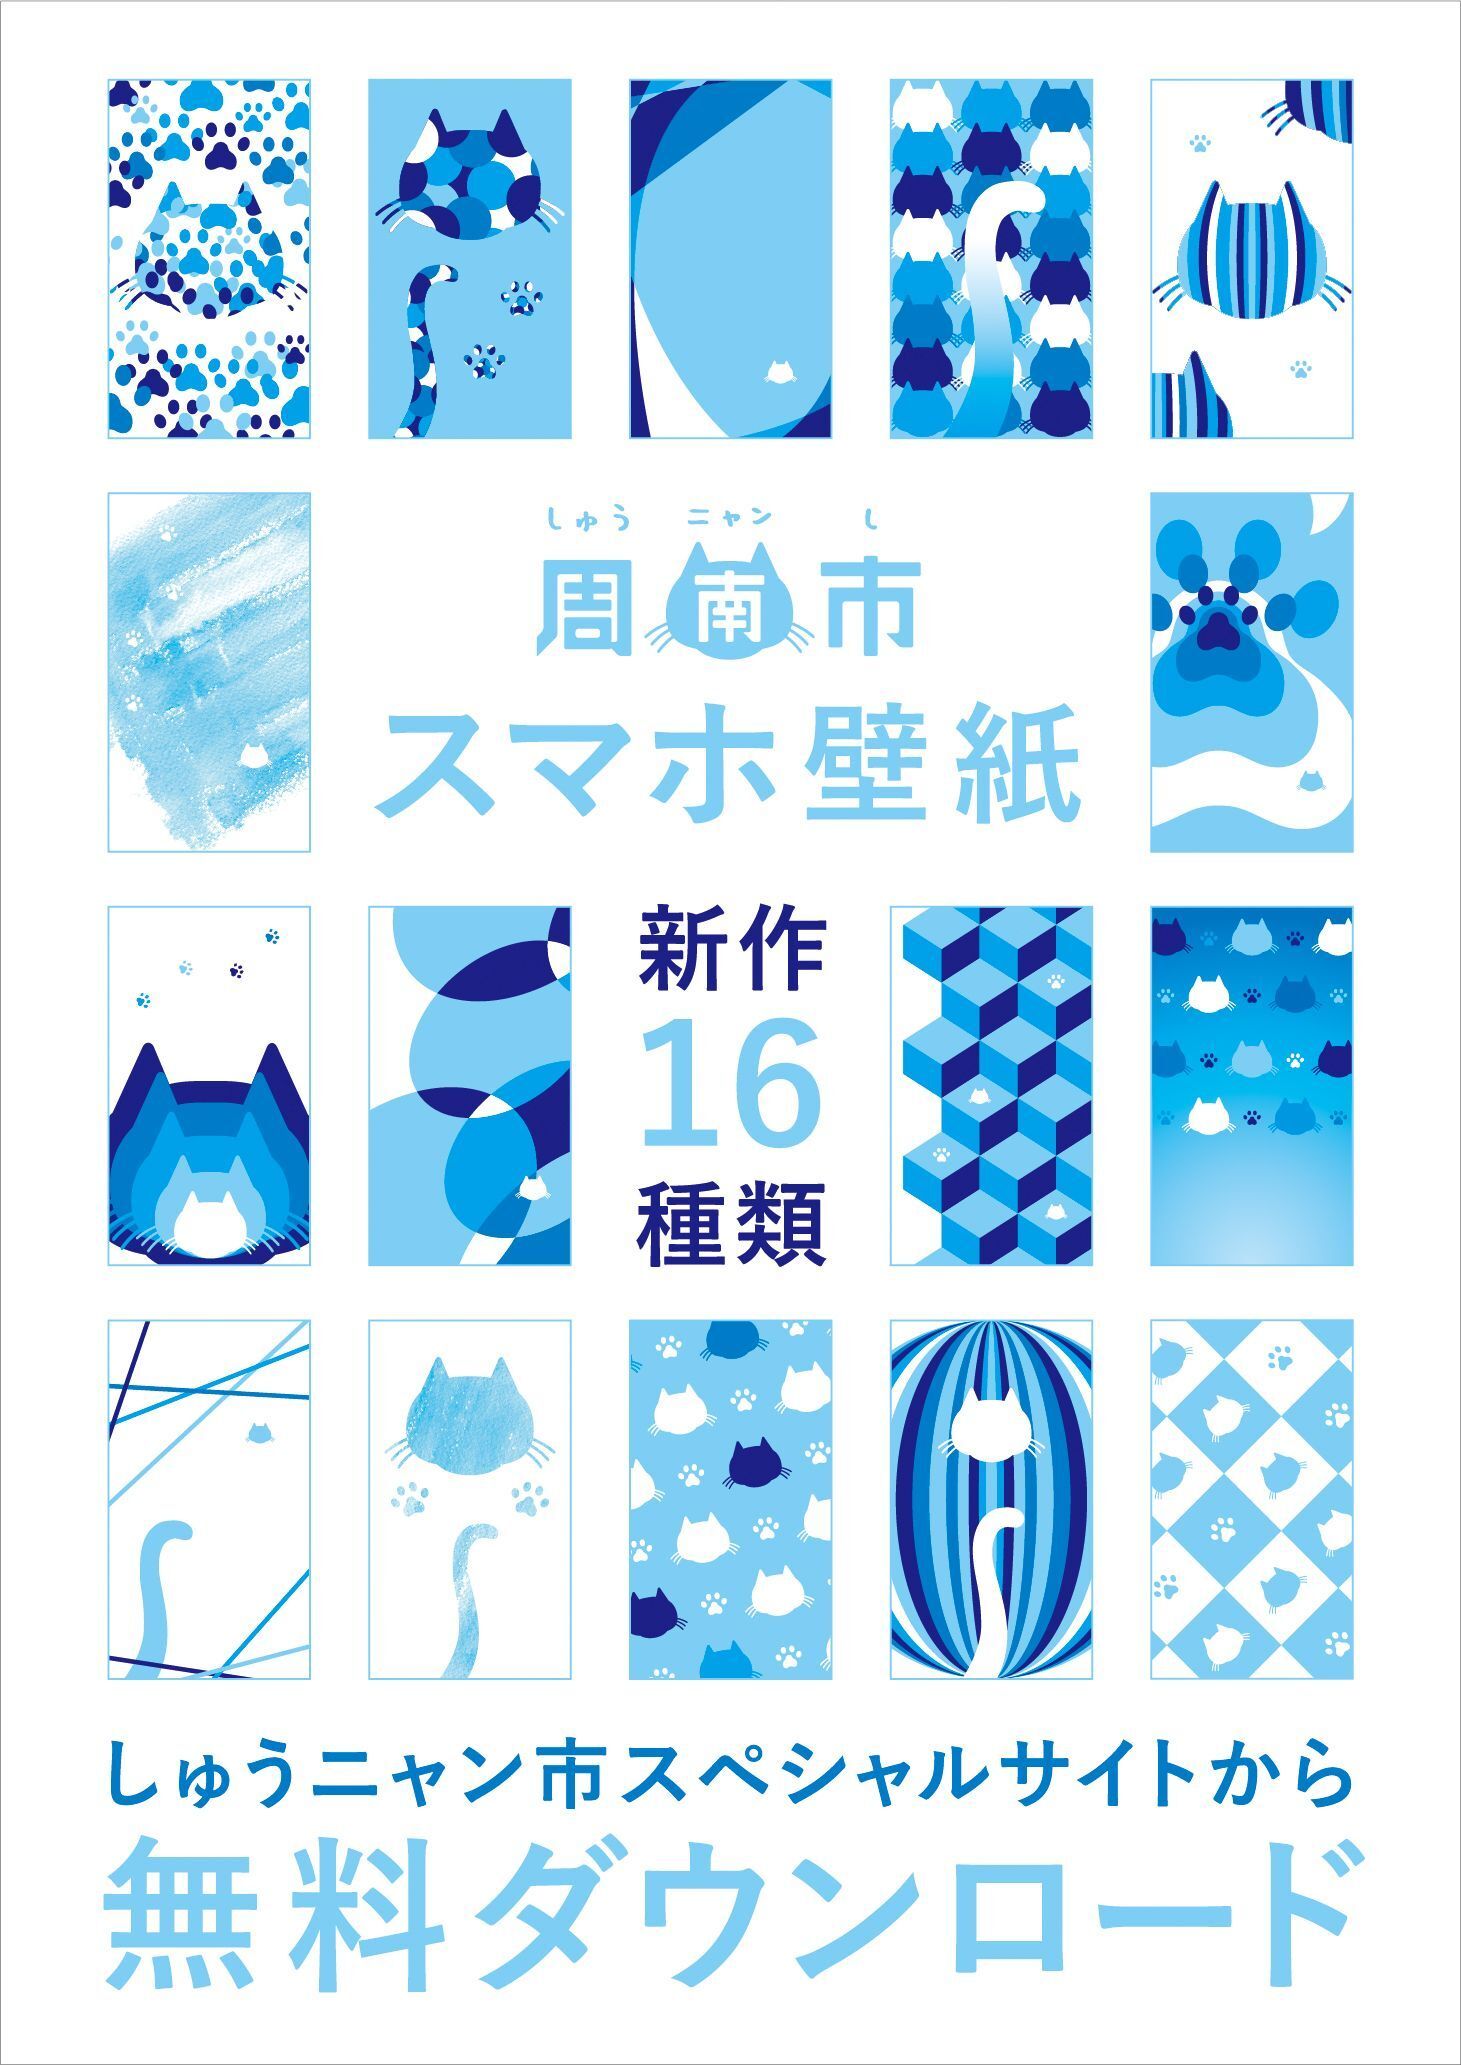 山口県しゅうニャン市のスペシャルサイトにスマートフォン用壁紙の新作16種類が登場 周南市役所 広報戦略課のプレスリリース